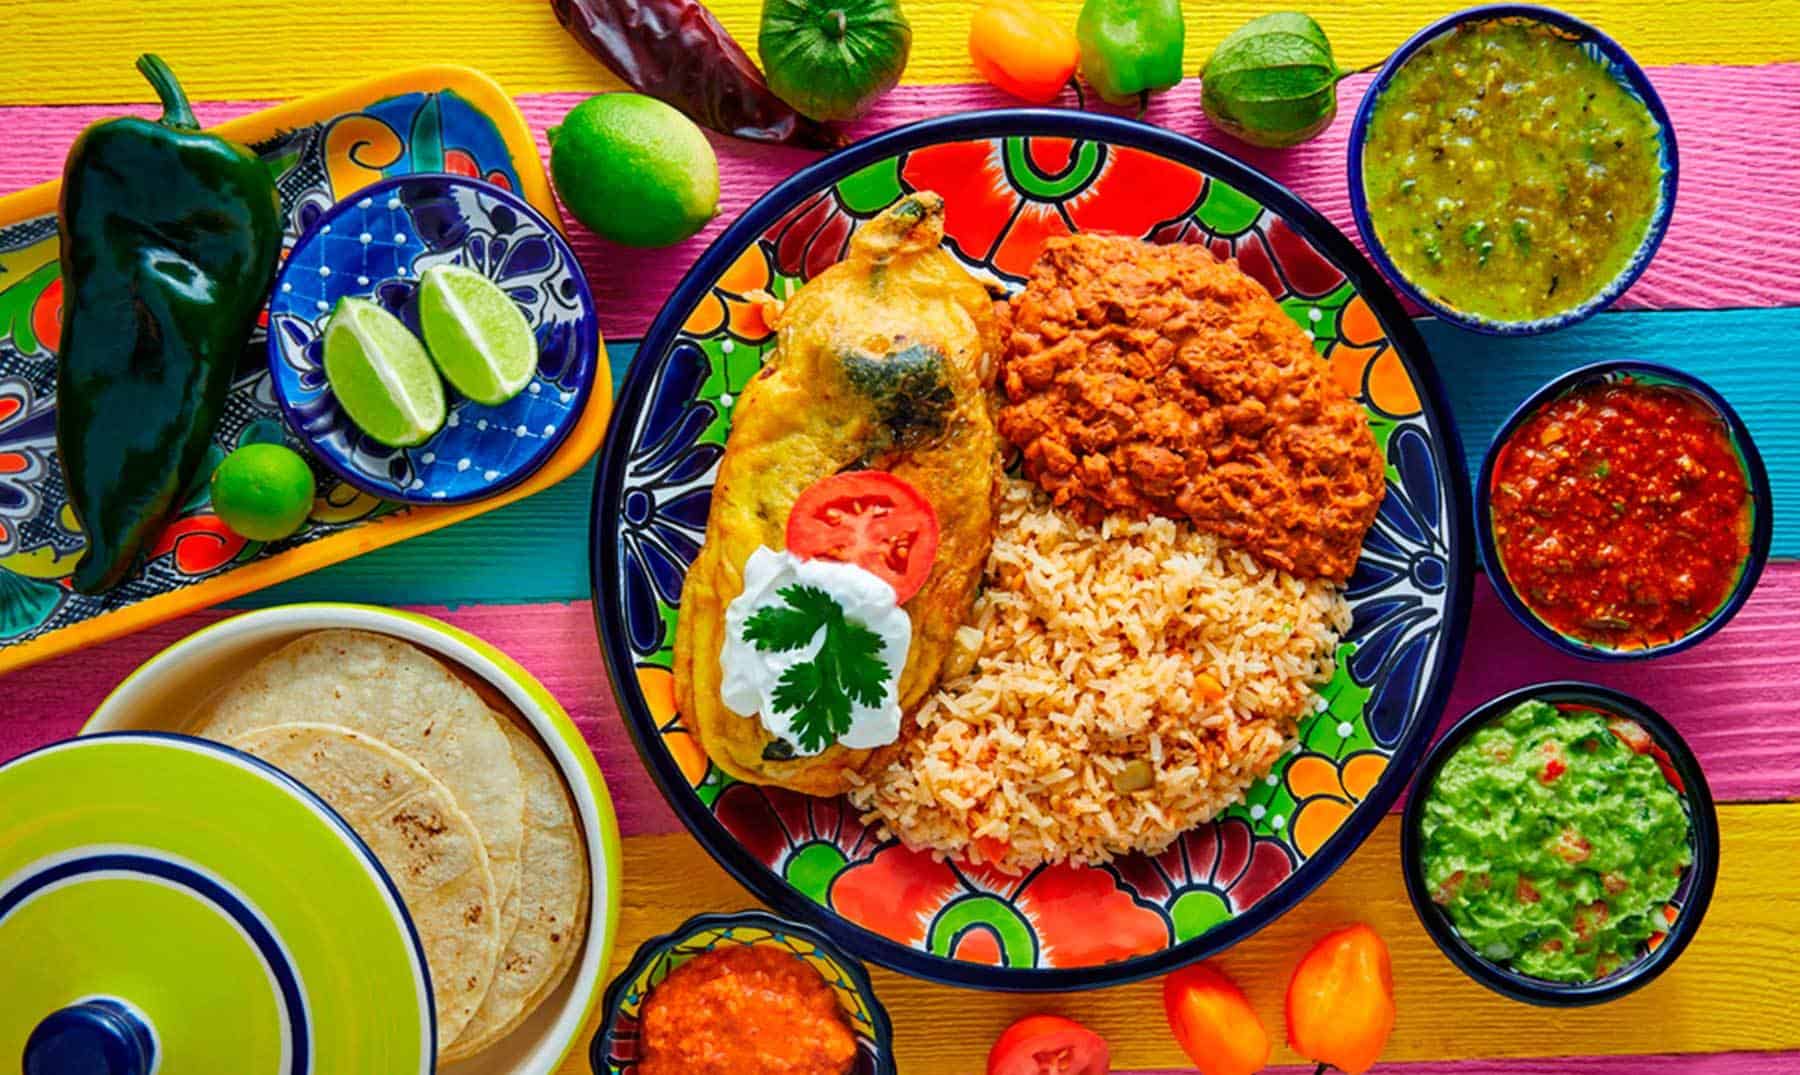 Consumen en México hasta 17 distintos platillos a la semana - THE FOOD TECH  - Medio de noticias líder en la Industria de Alimentos y Bebidas